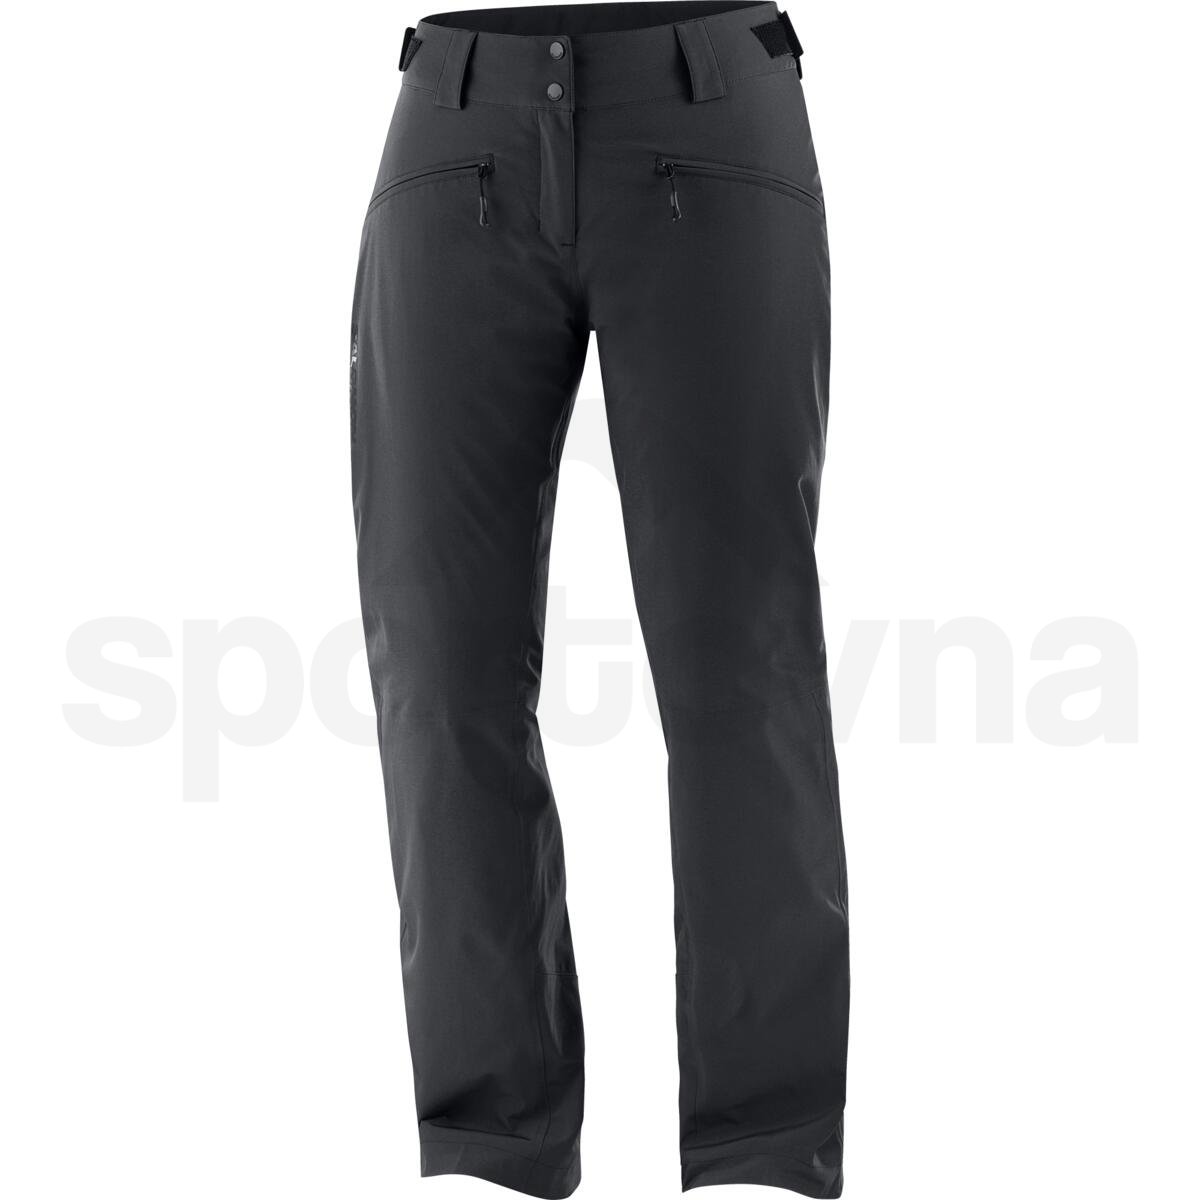 Kalhoty Salomon Edge Pant W - černá (zkrácená délka)